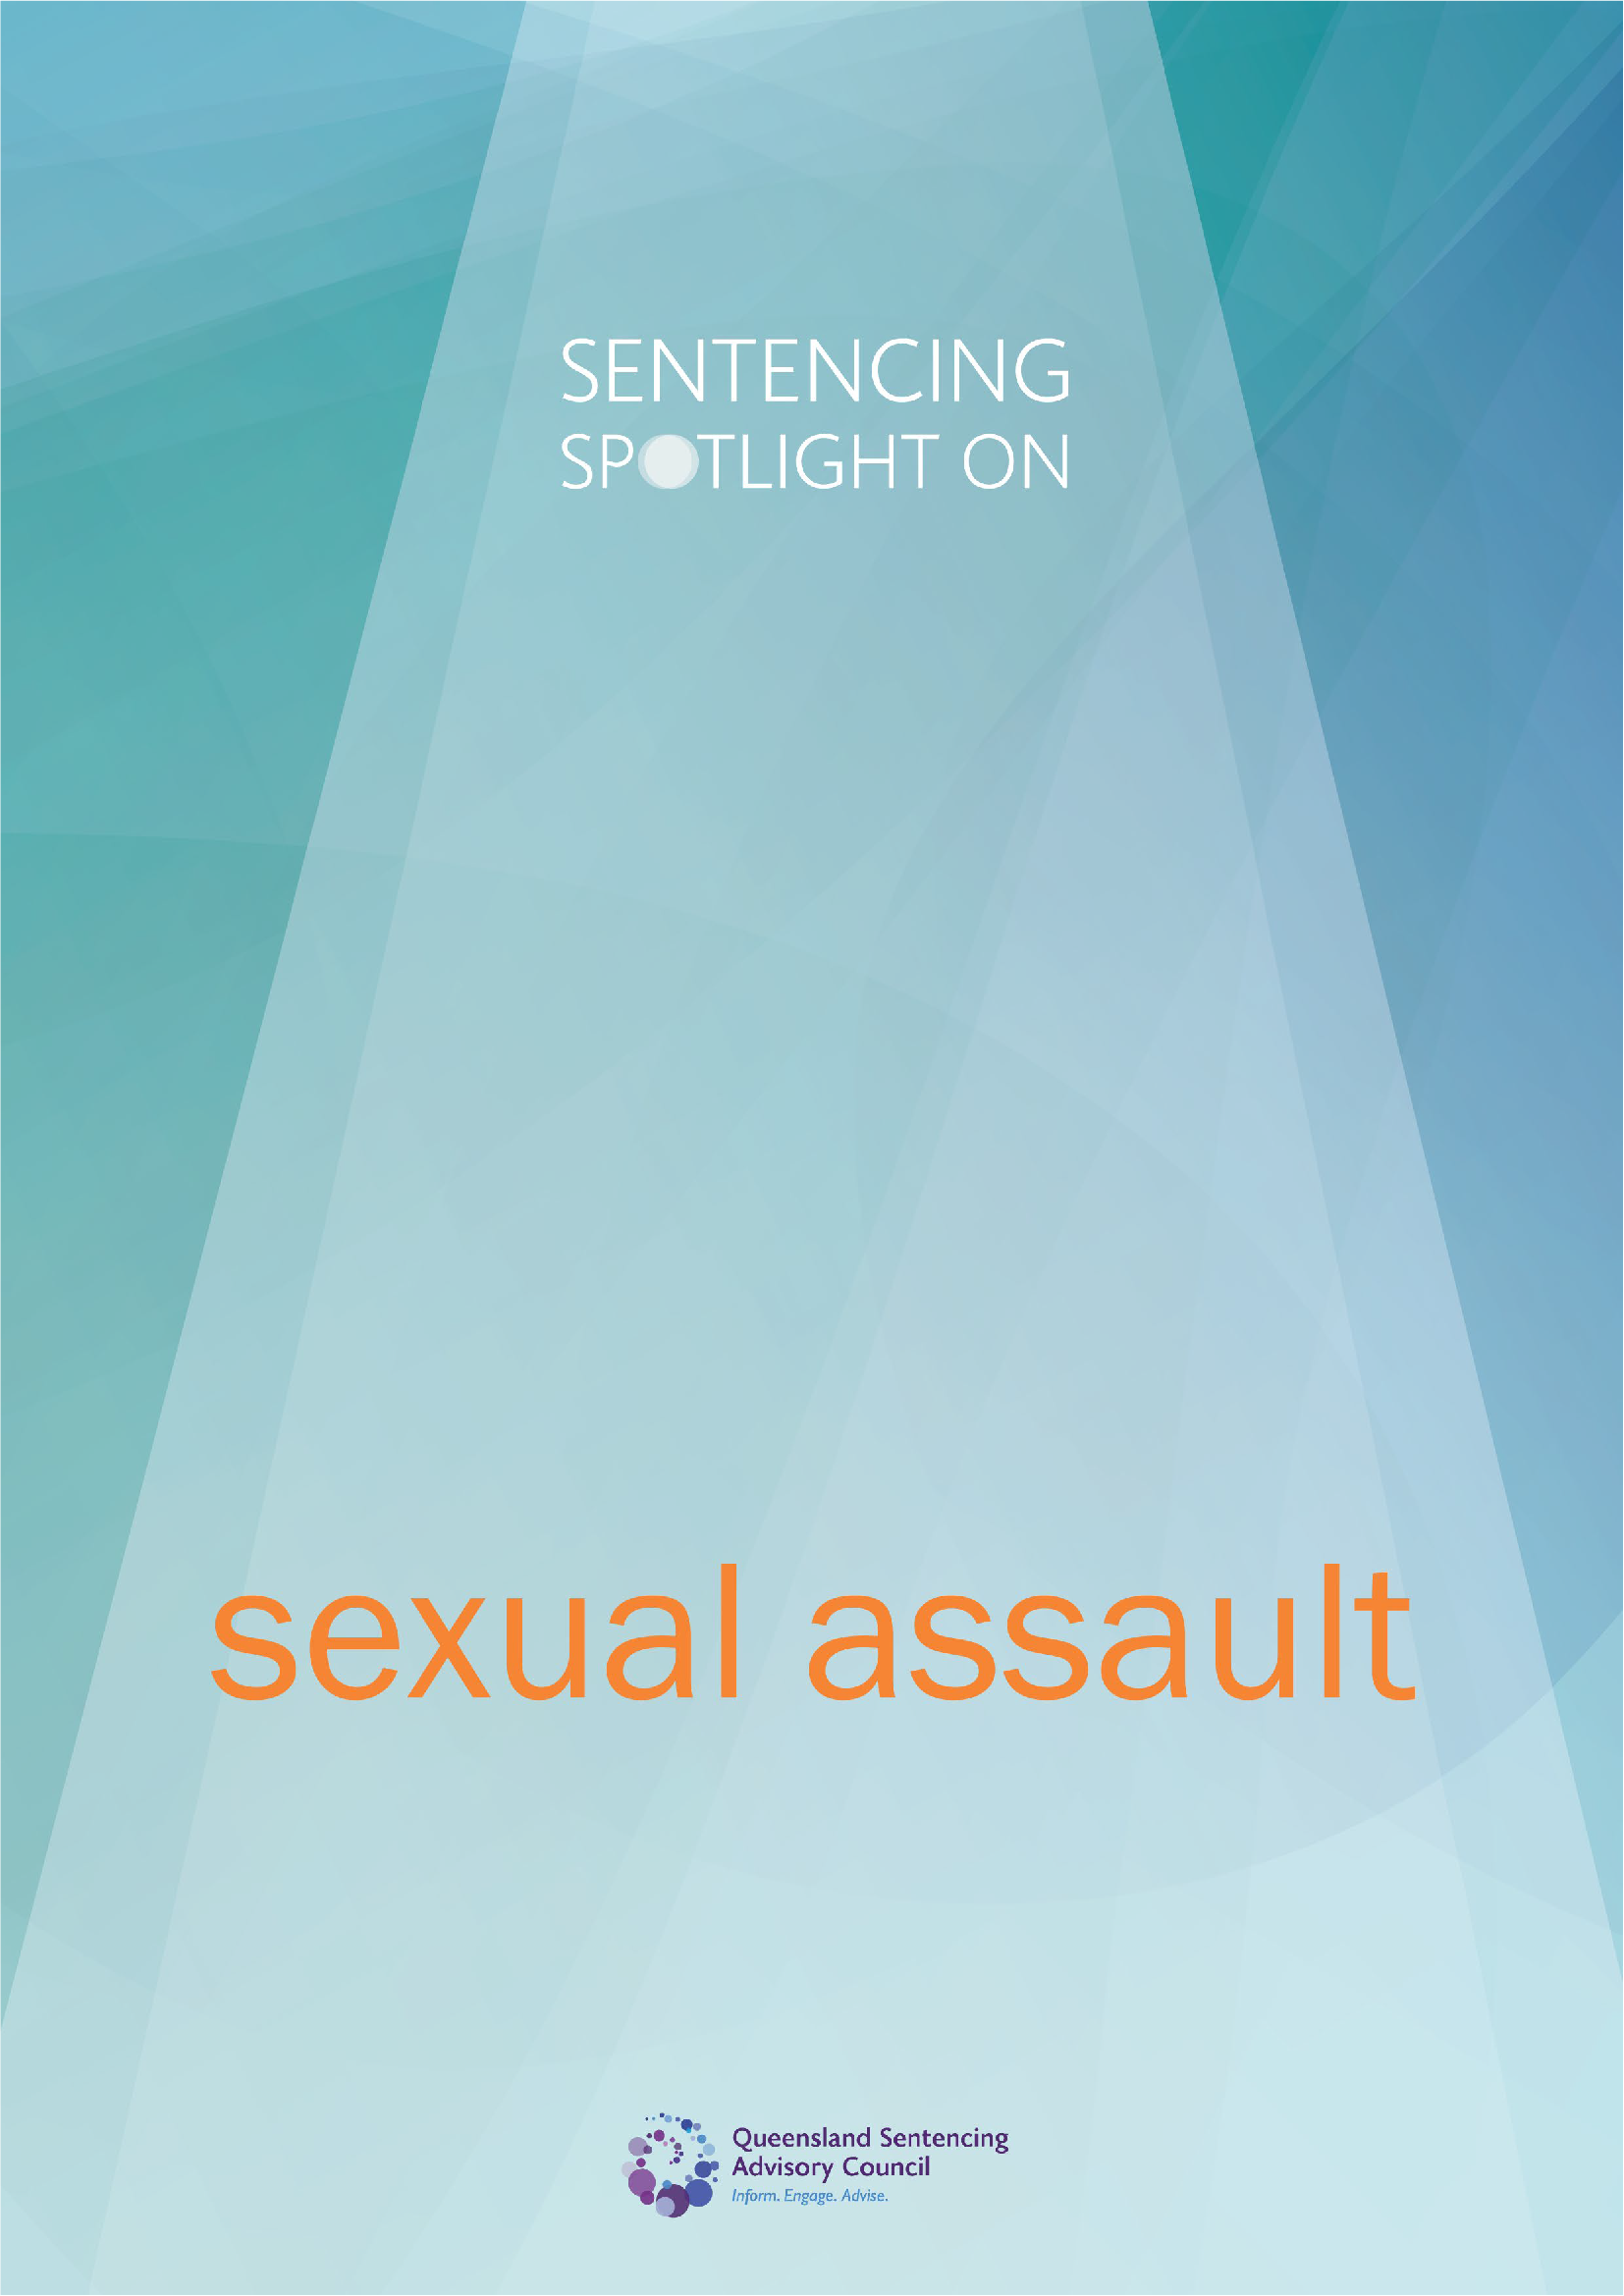 Sentencing spotlight on sexual assault